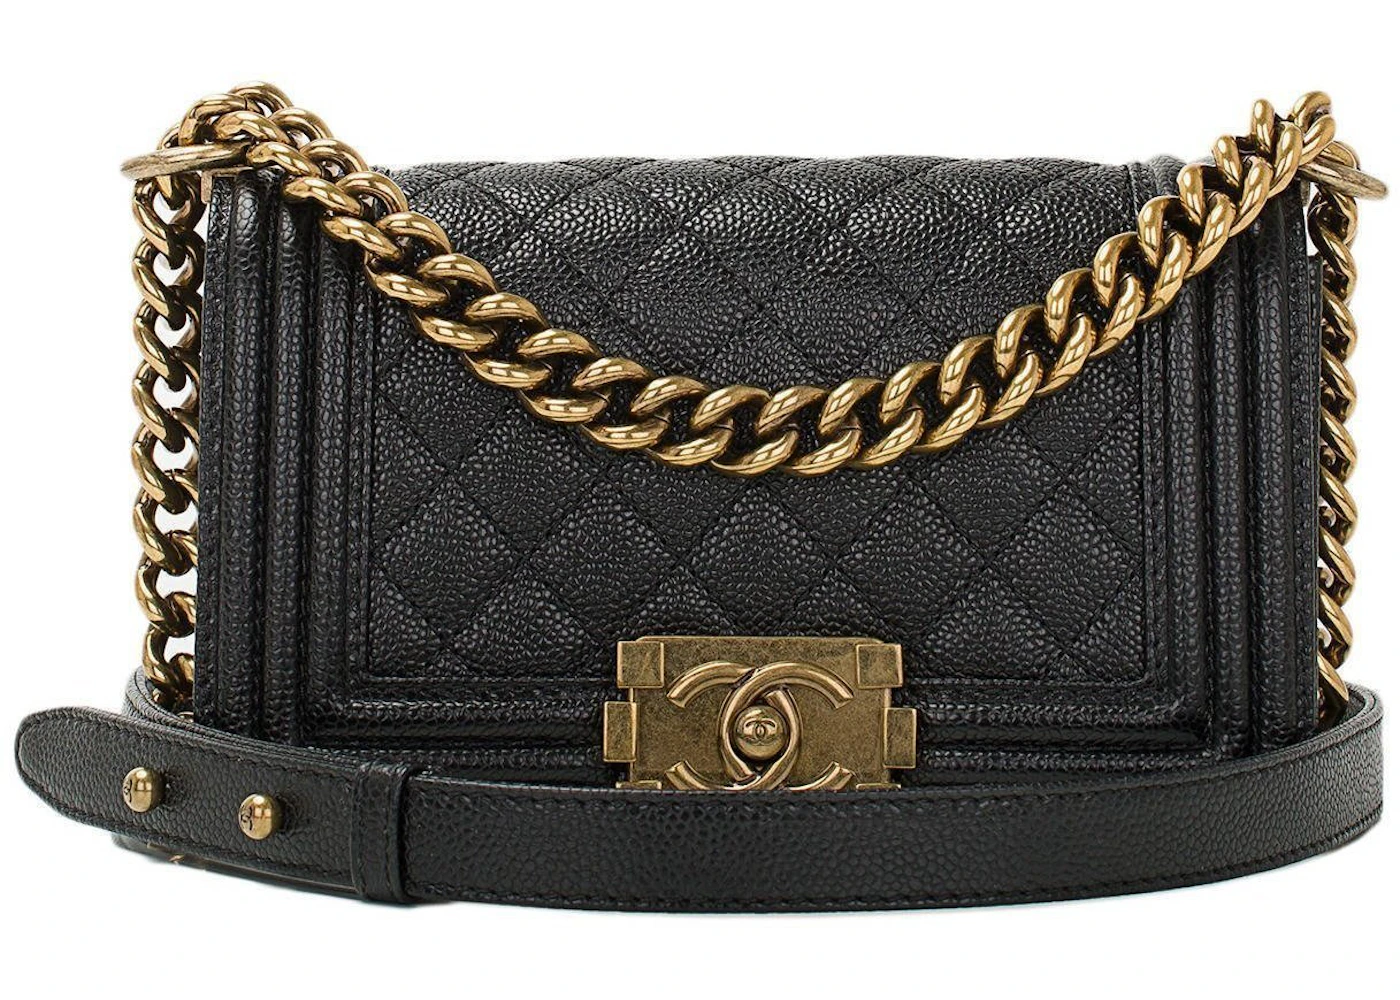 Chanel - Small Boy Flap Bag Calfskin Noir